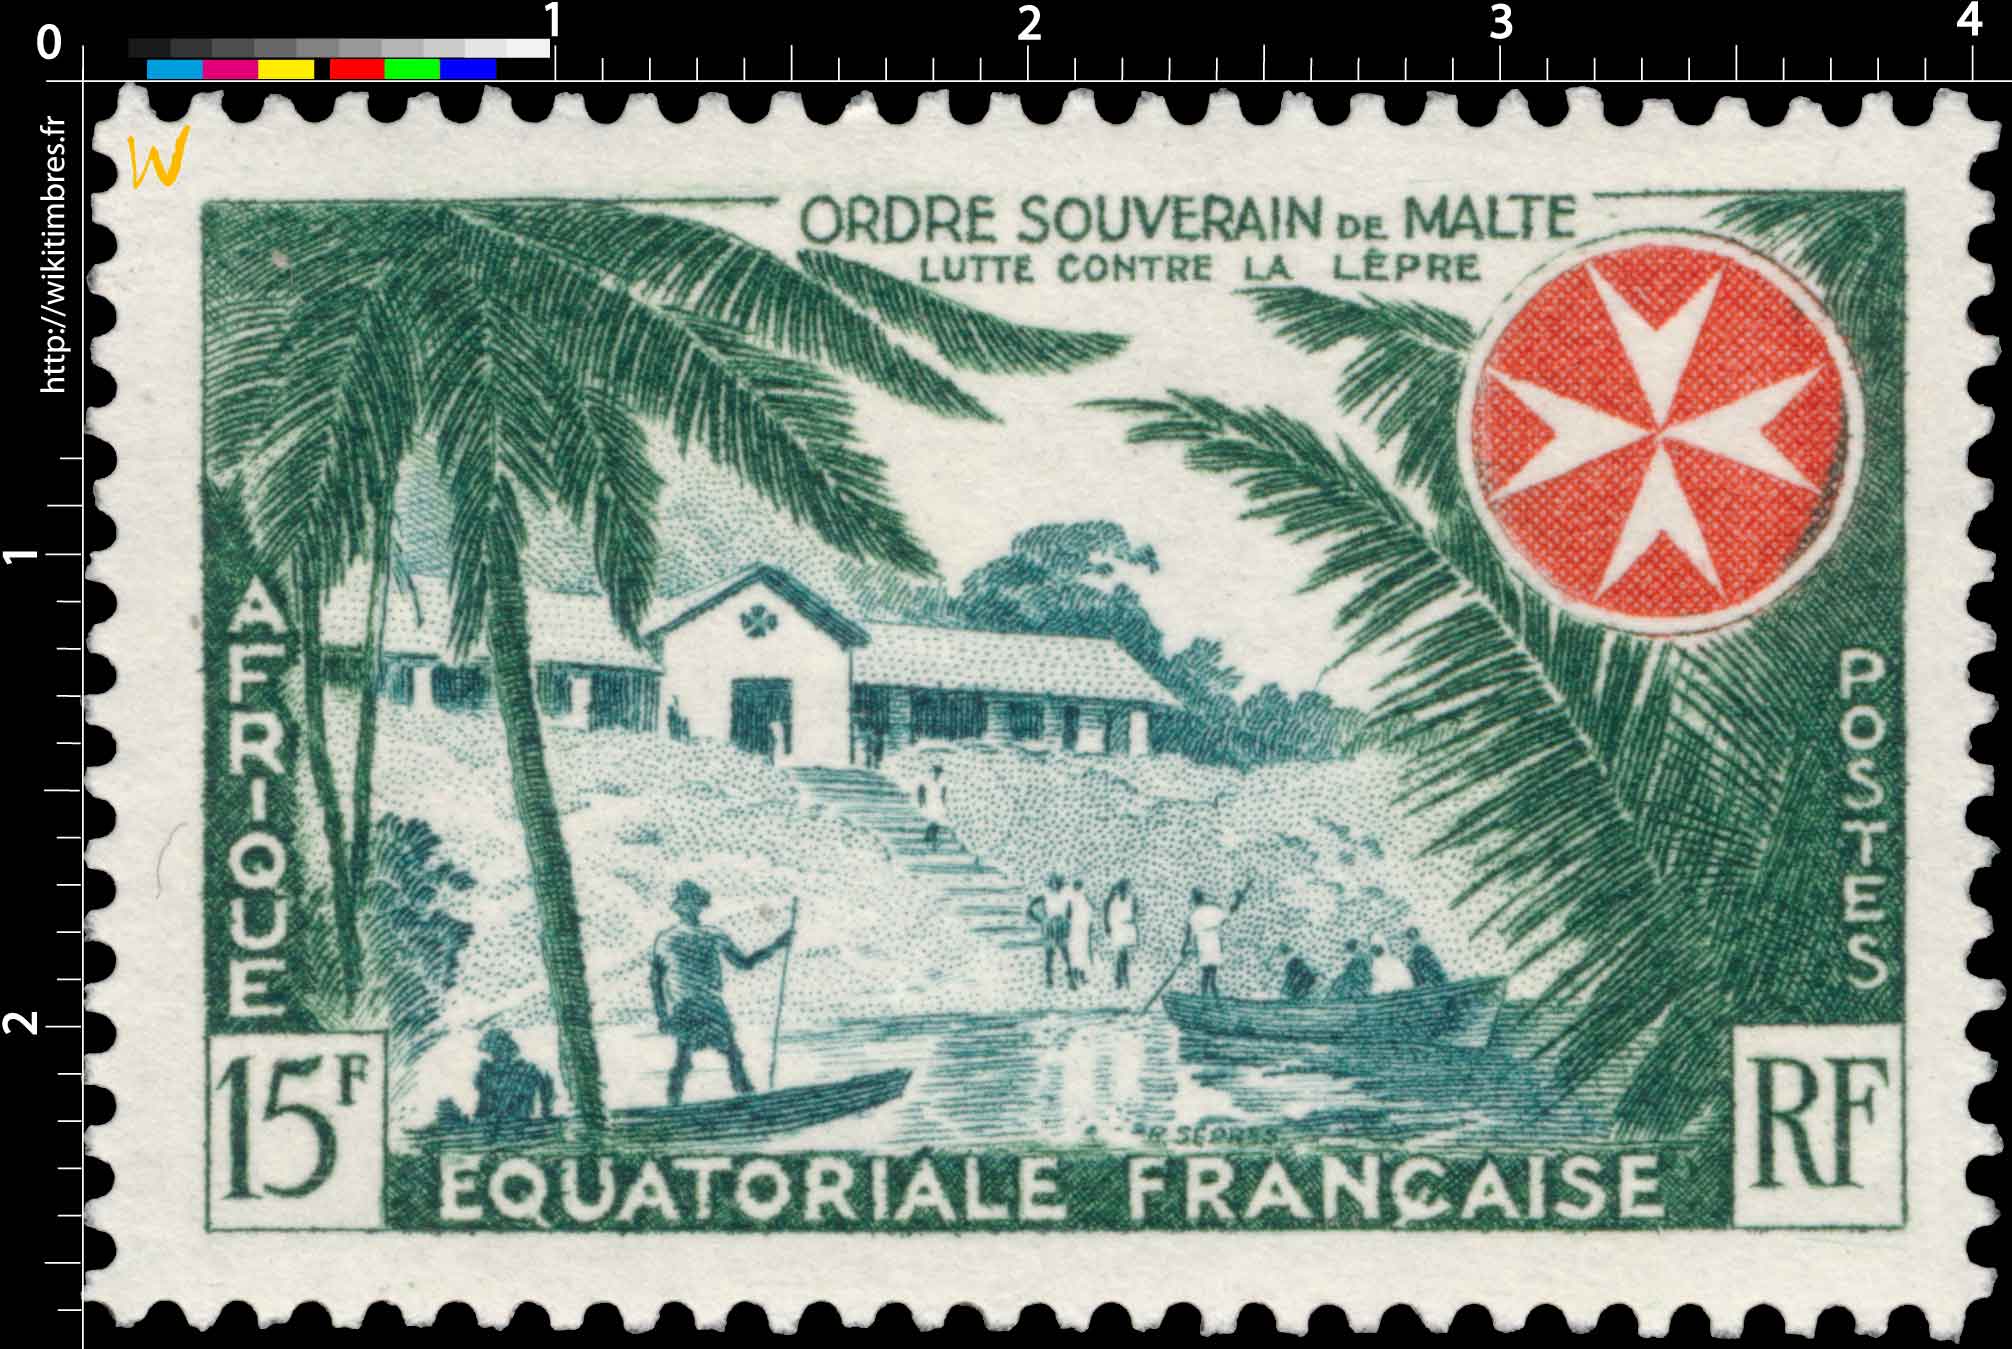 Ordre souverain de Malte lutte contre la lèpre Afrique Équatoriale Française